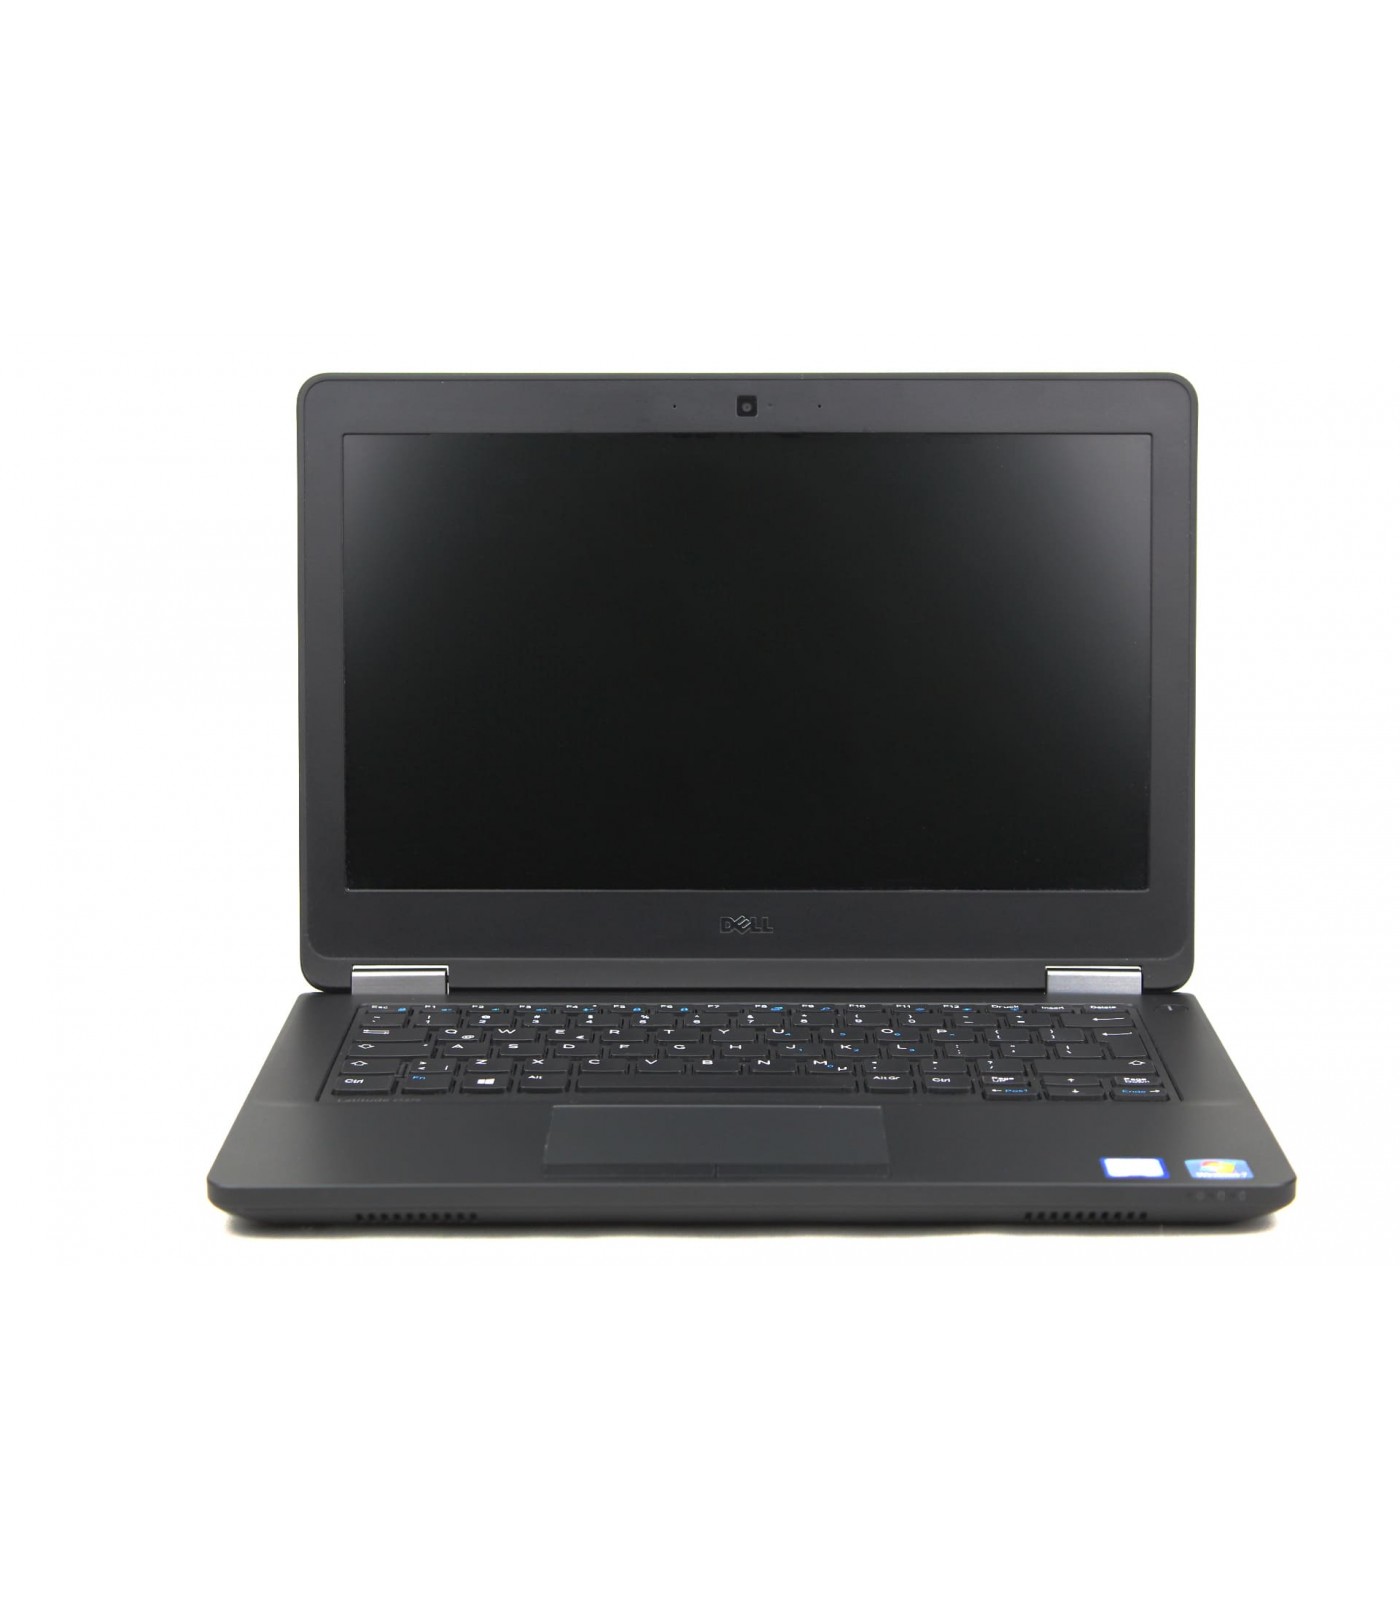 Poleasingowy Dell Latitude E5270 z szybkim dyskiem SSD i procesorem i5